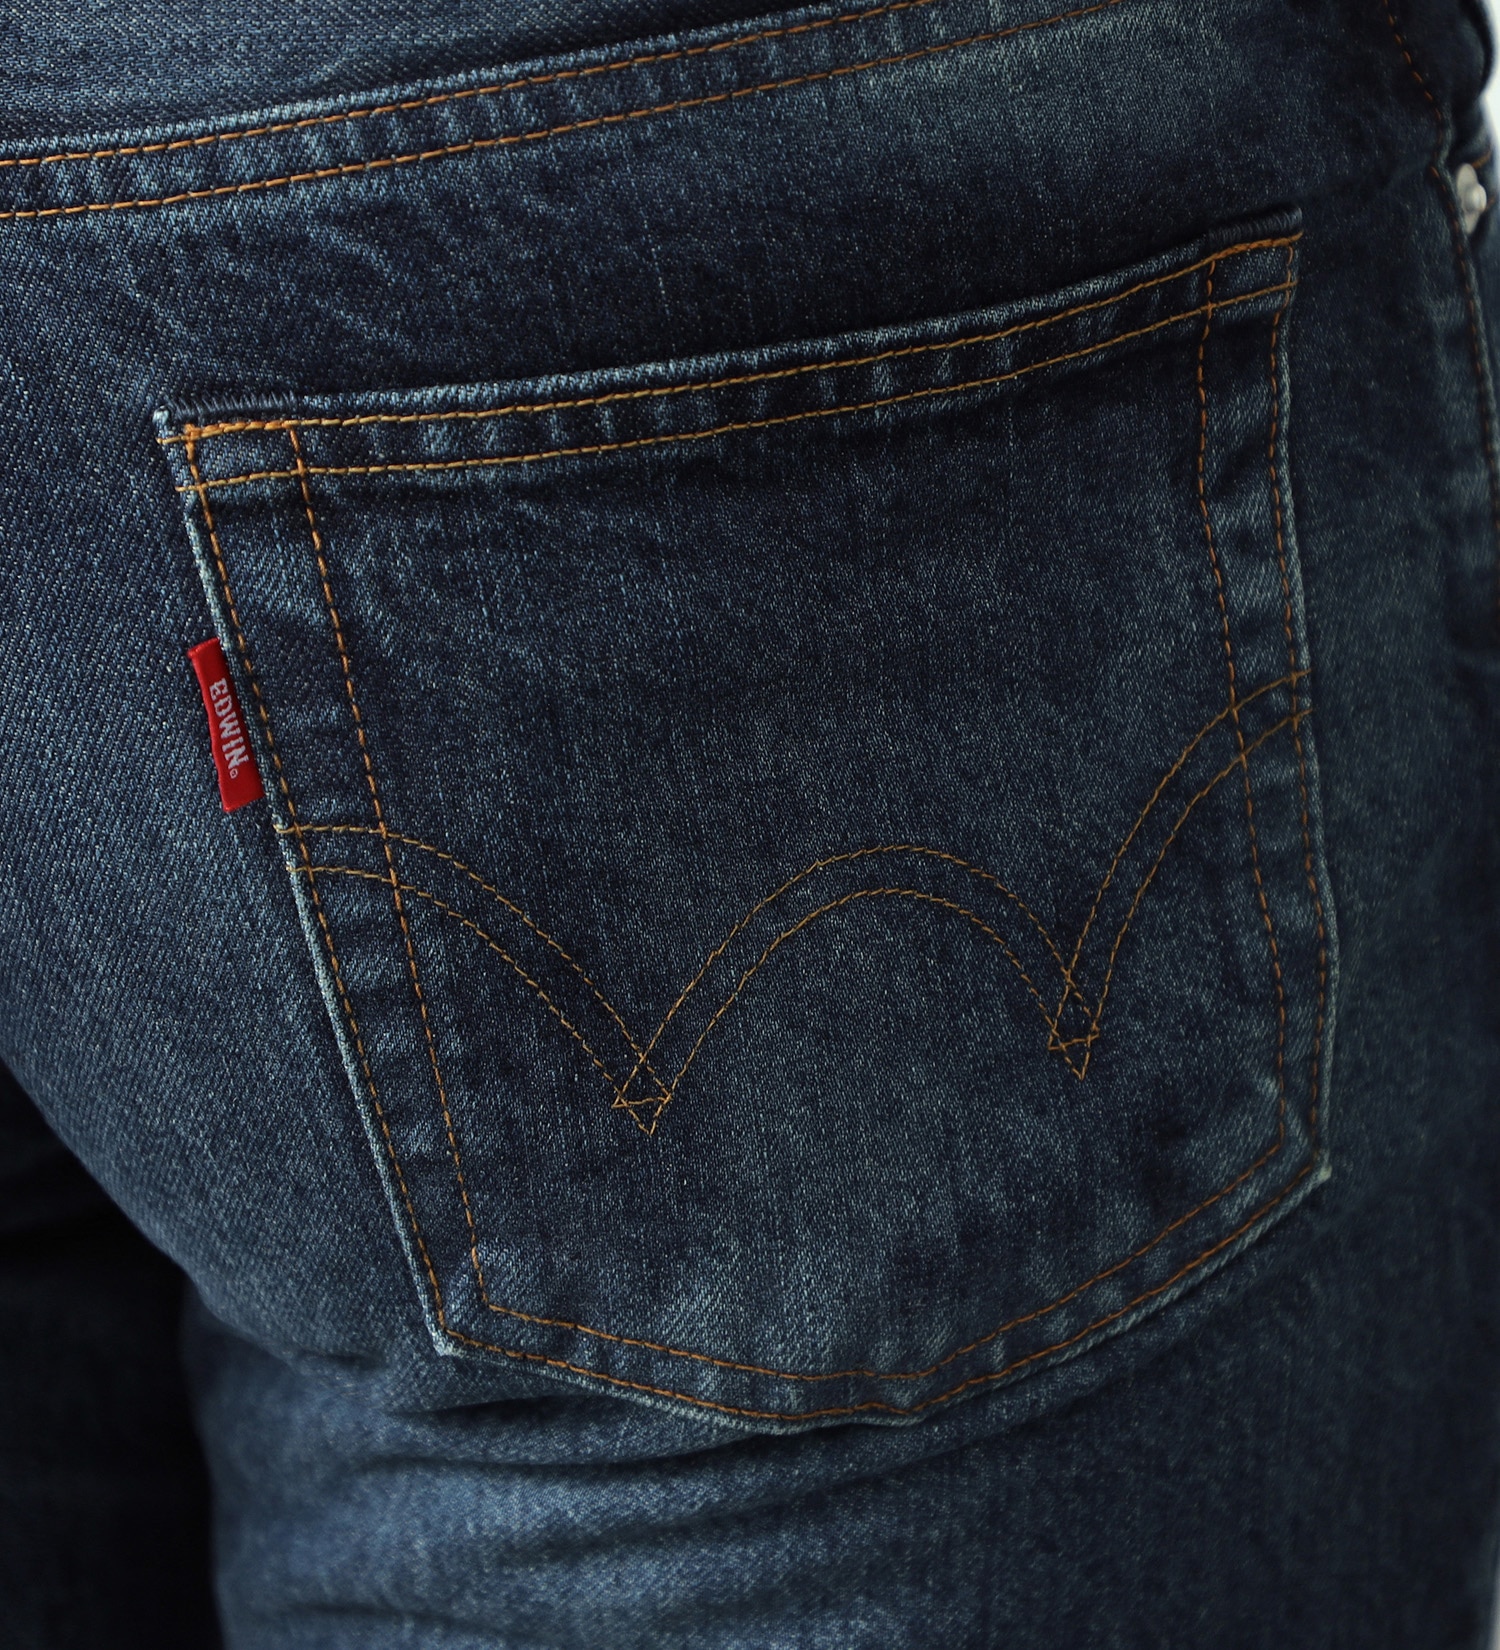 EDWIN(エドウイン)の503 レギュラーストレートパンツ REGULAR STRAIGHT MADE IN JAPAN 日本製 綿100%|パンツ/デニムパンツ/メンズ|濃色ブルー